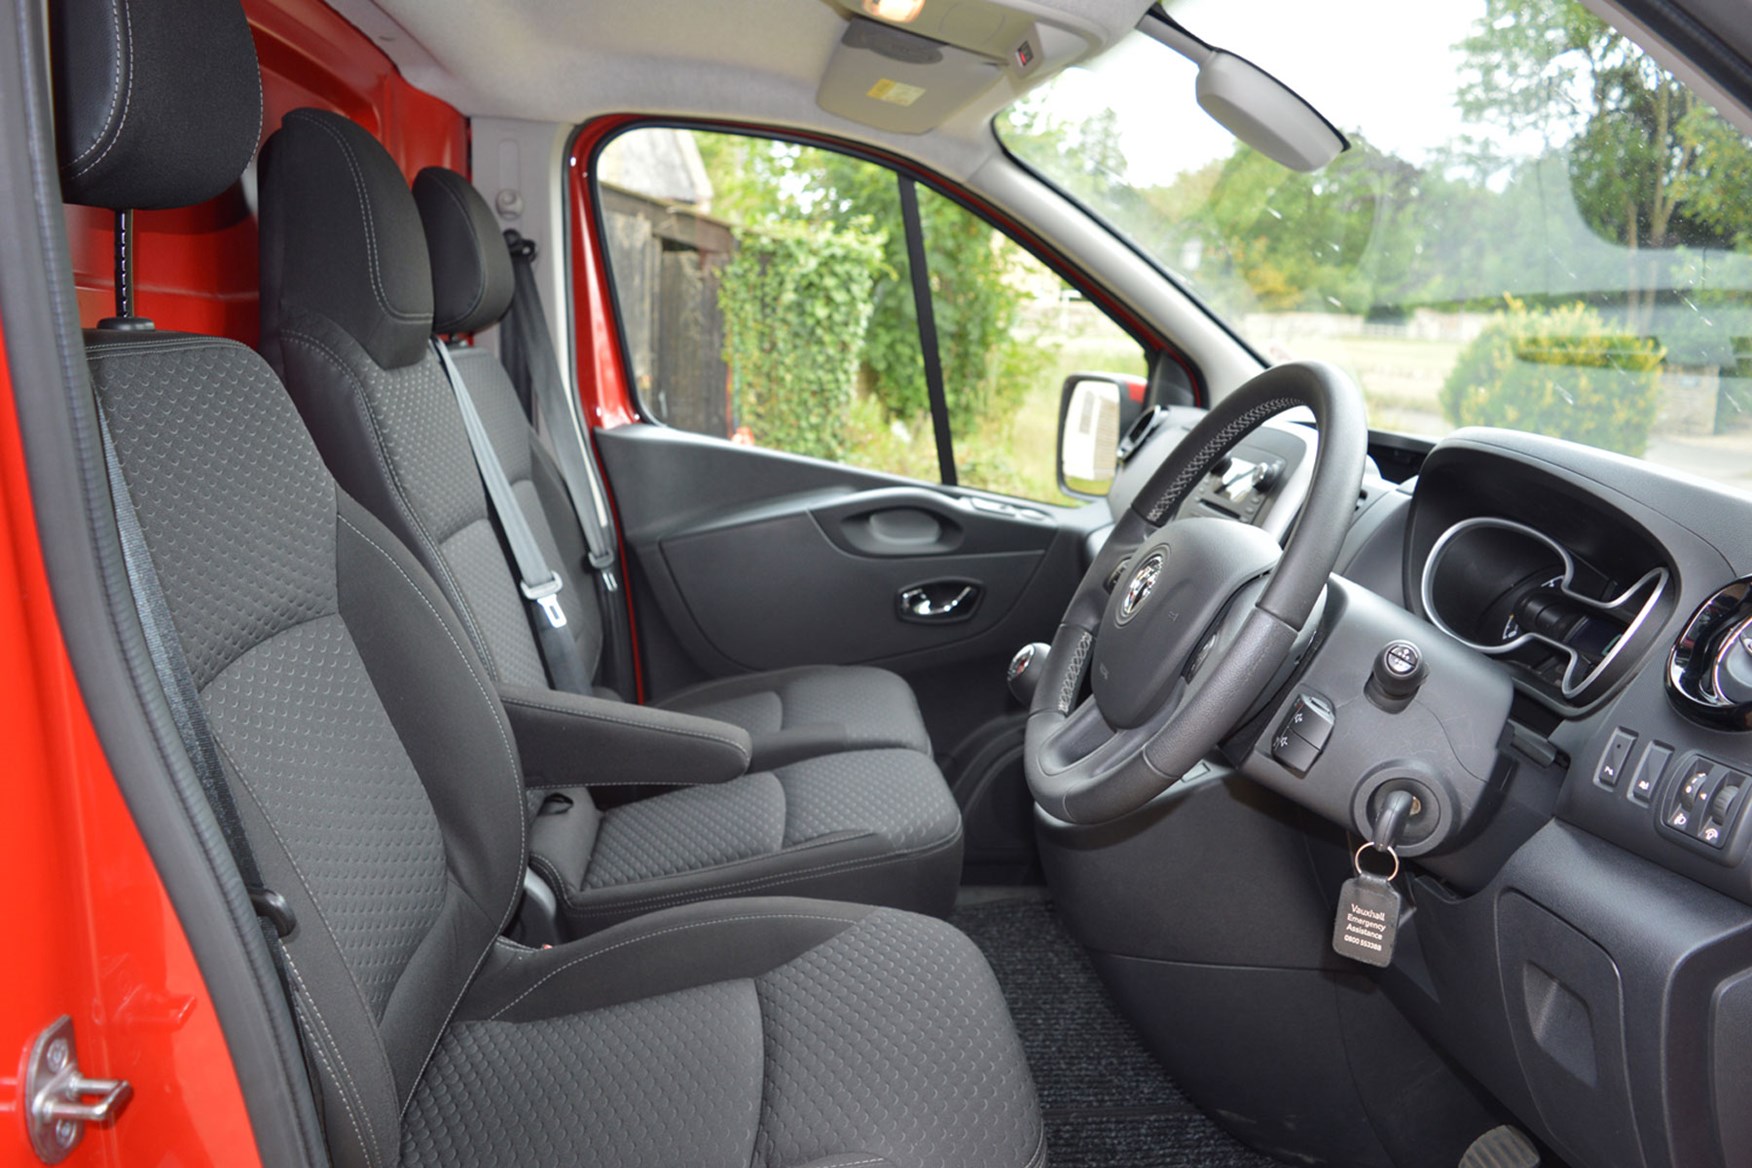 Vauxhall Vivaro Sportive EU5 review - cab interior